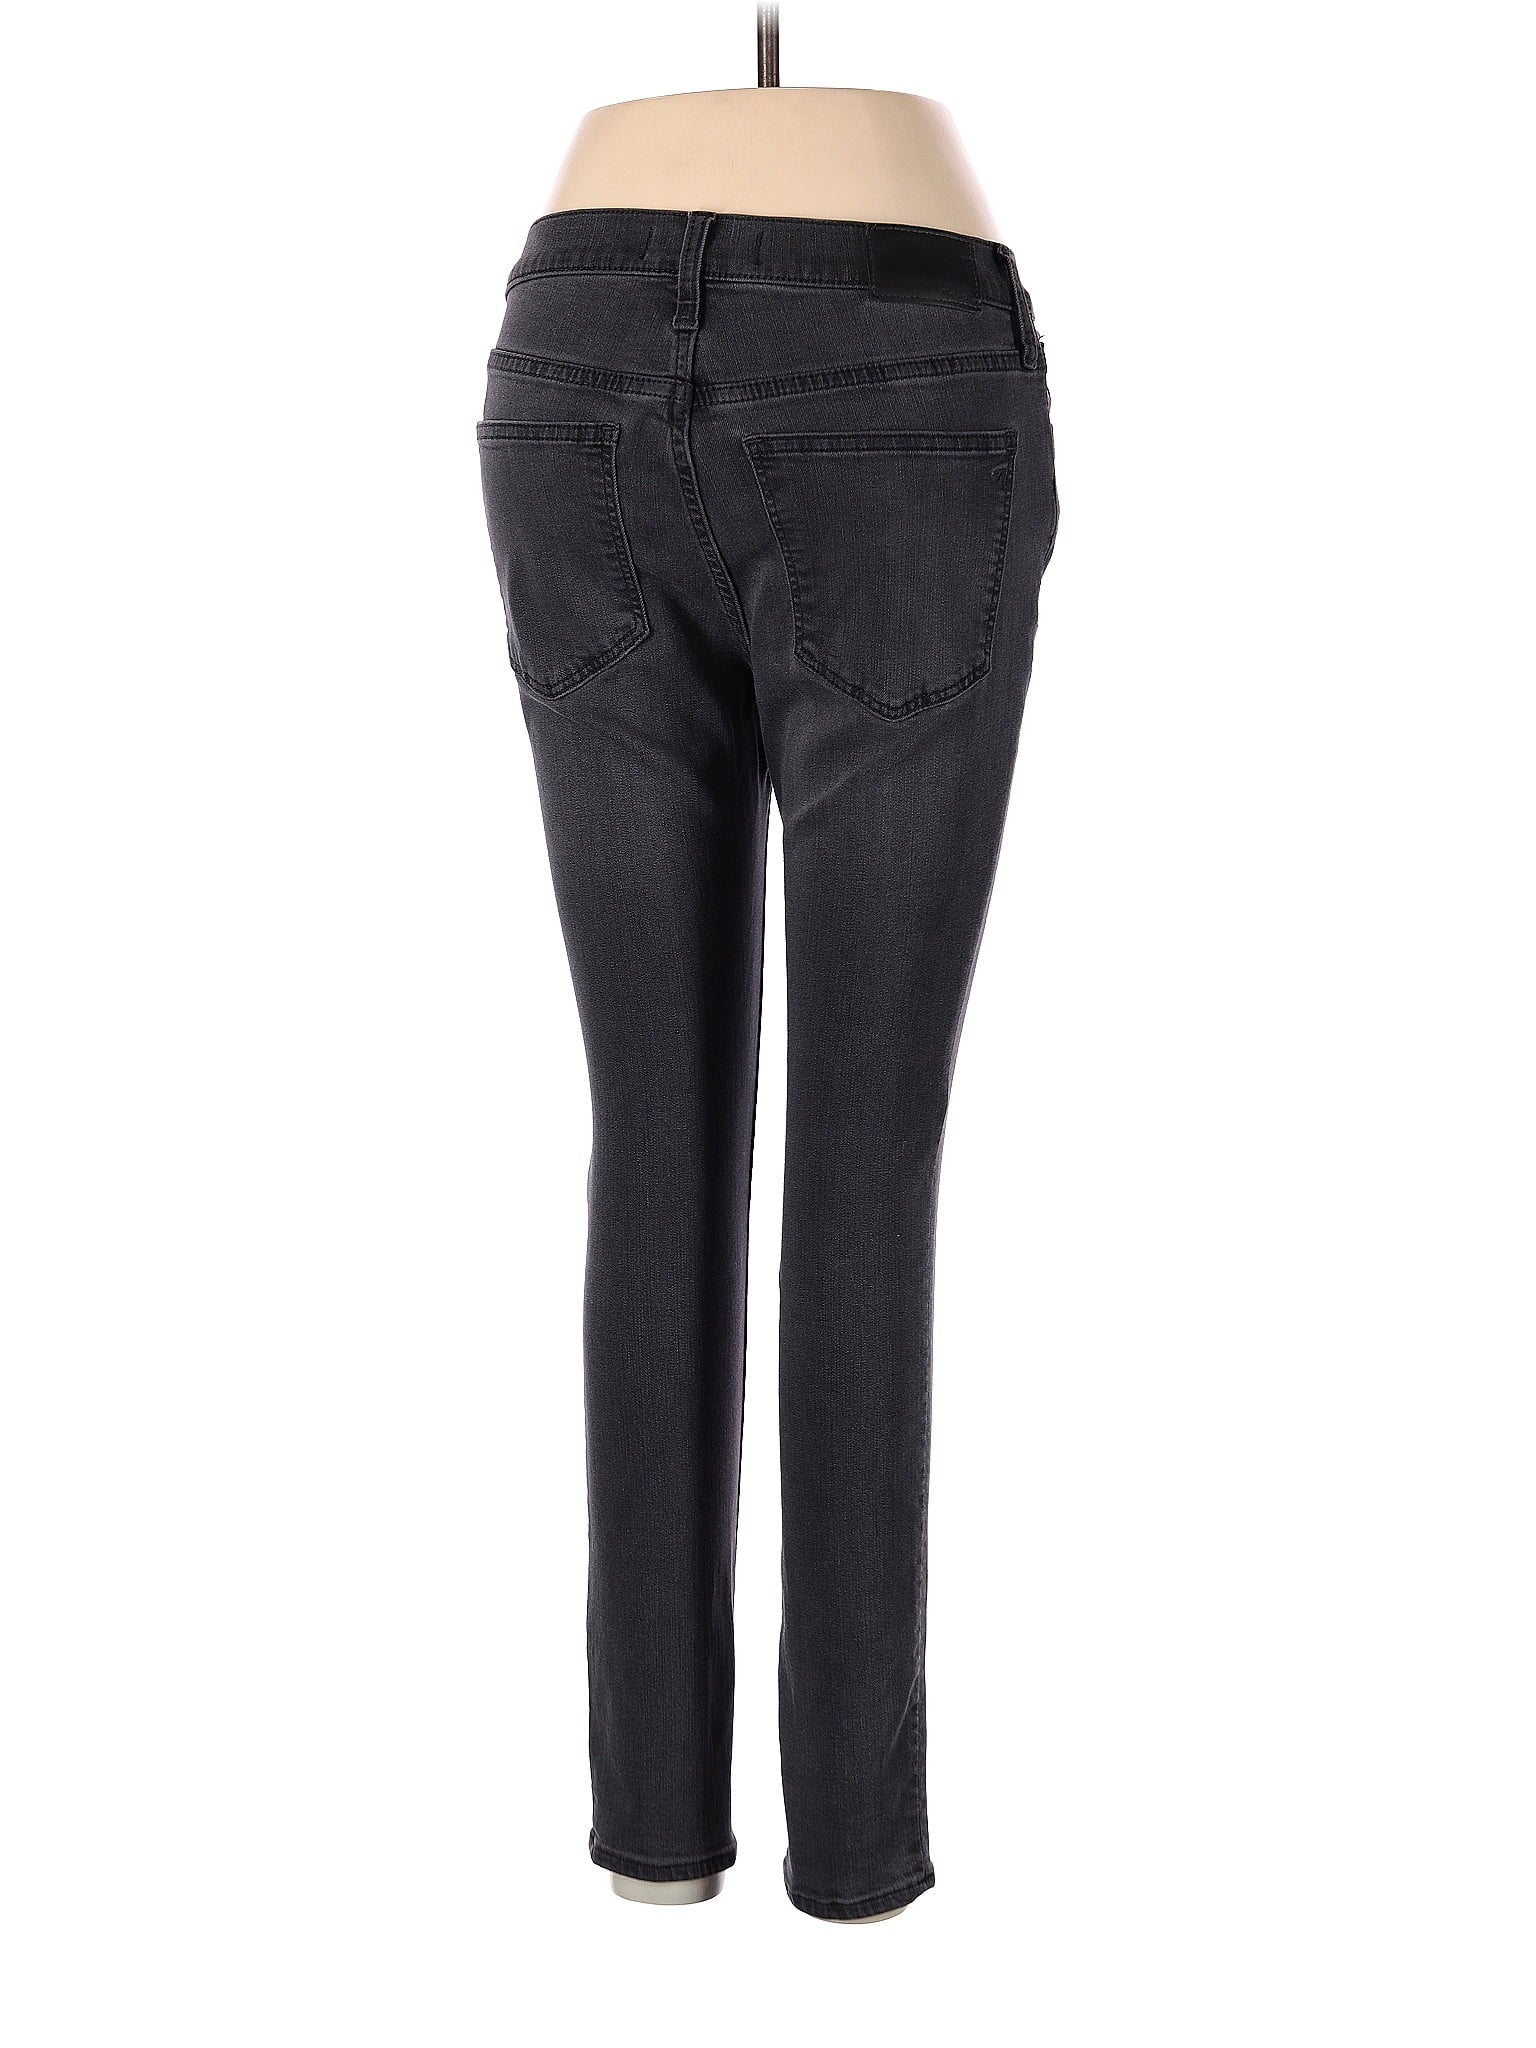 Low-Rise Boyjeans Jeans in Dark Wash waist size - 28 P